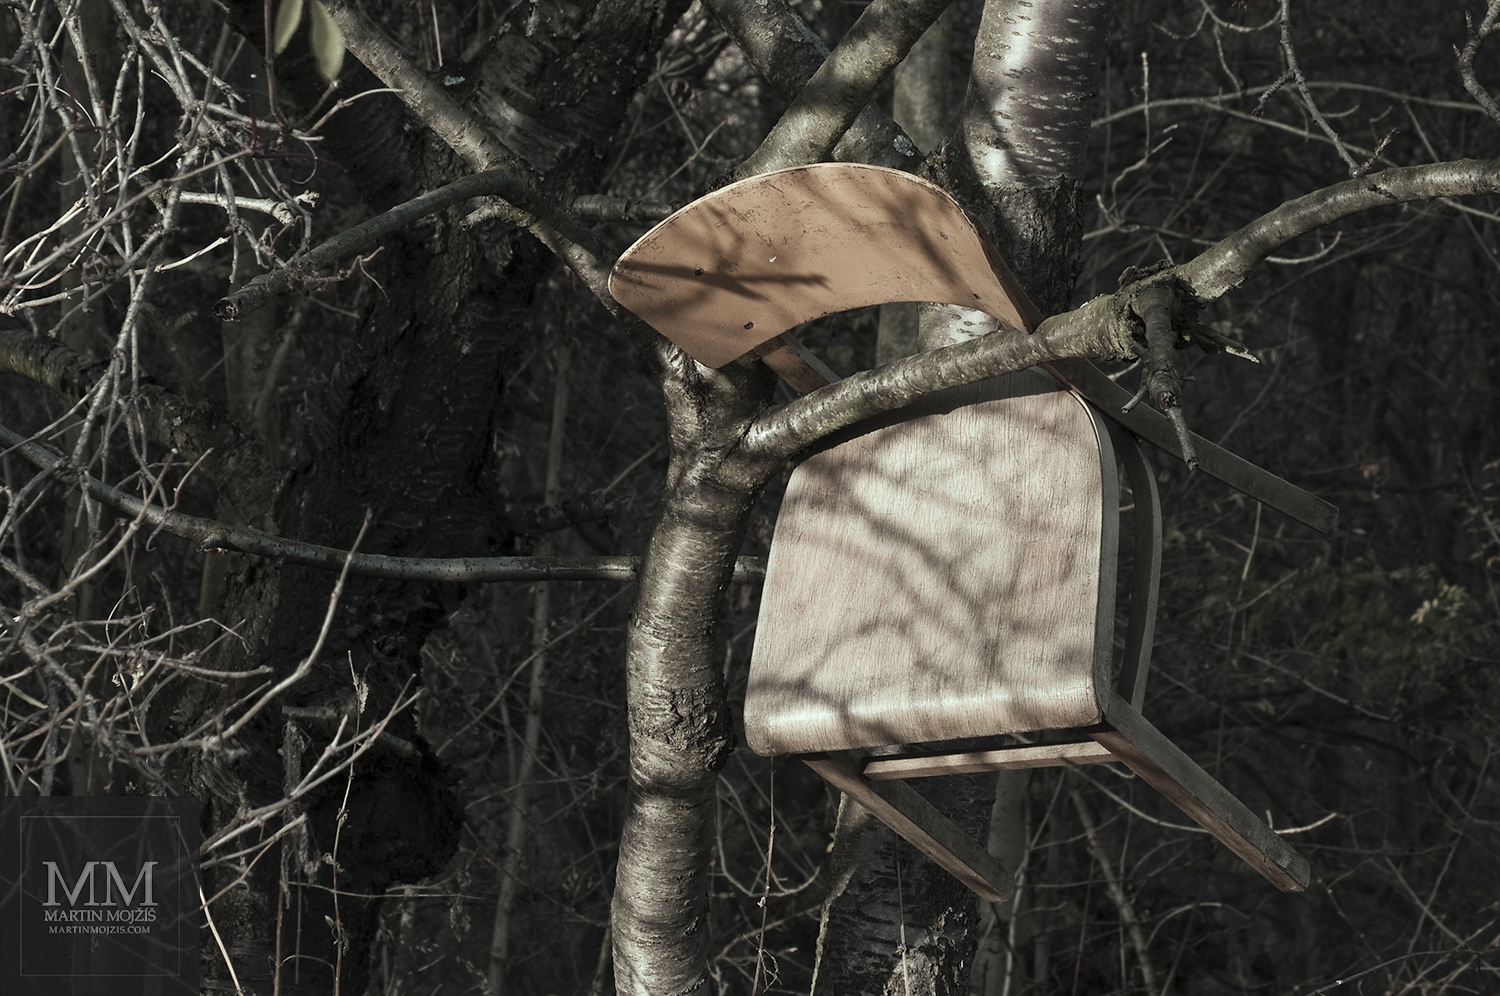 Židle ukrytá ve větvích stromů. Umělecká fotografie Martina Mojžíše s názvem ŽIDLE II.